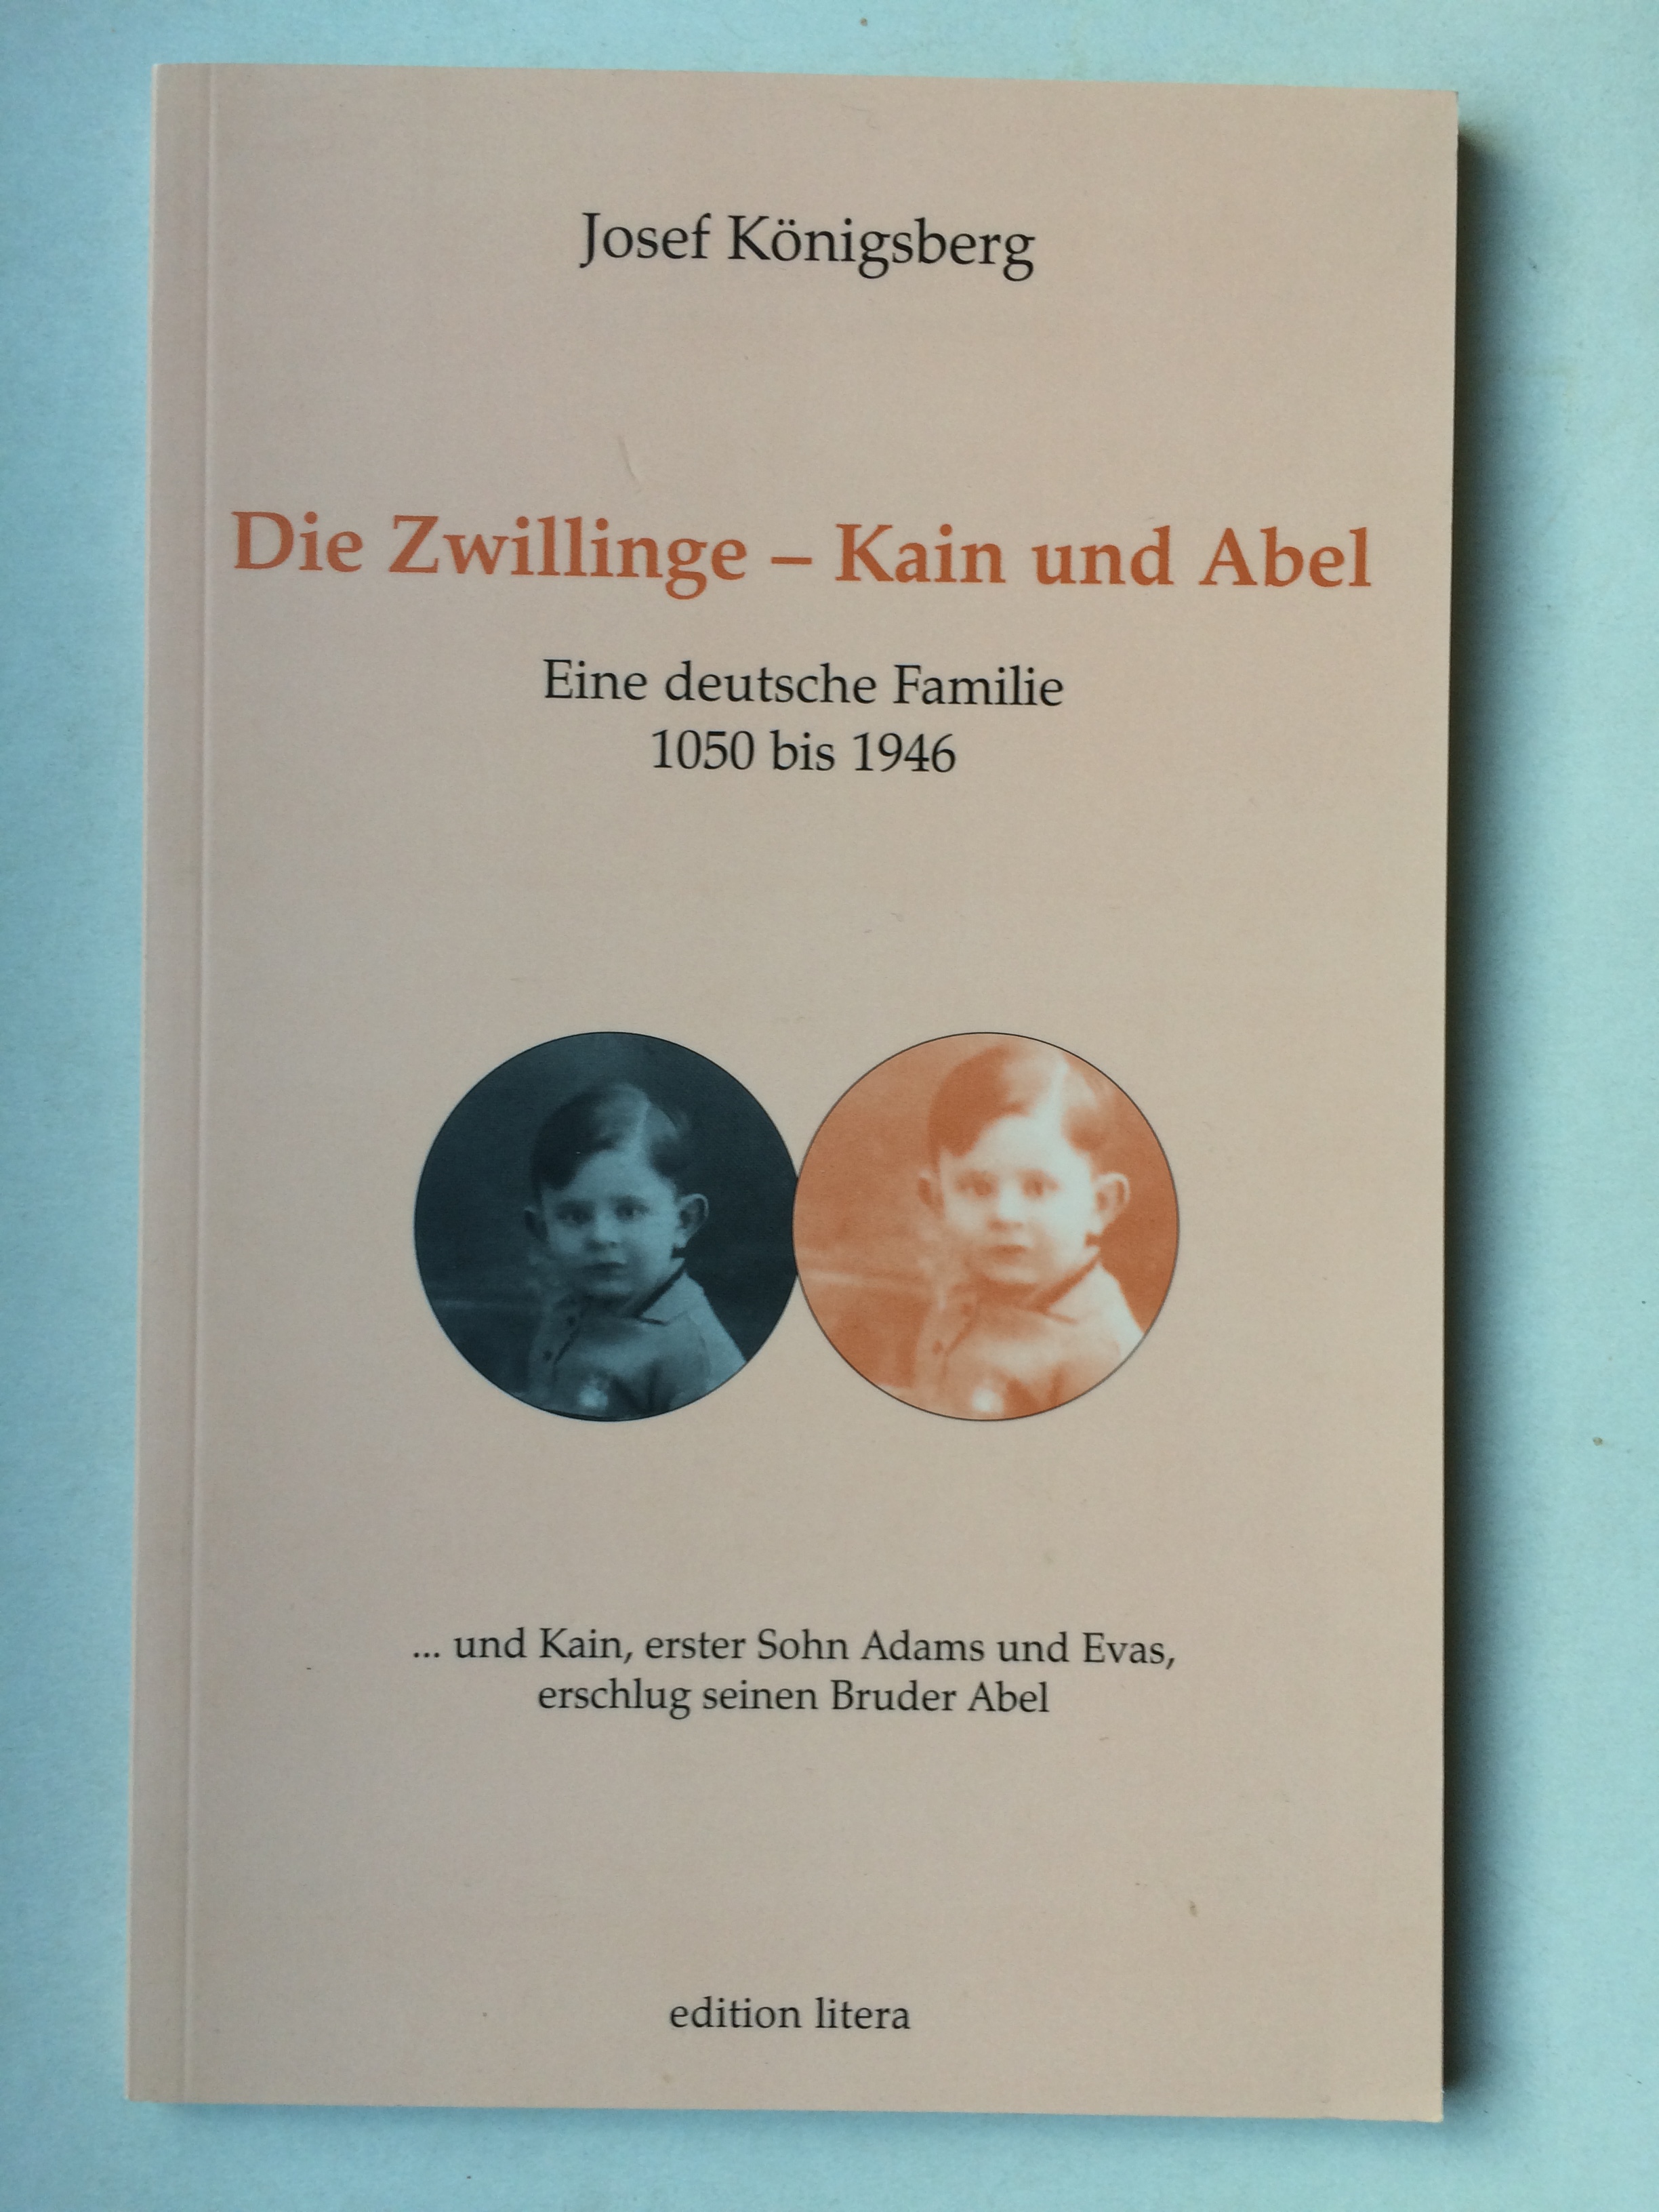 Die Zwillinge - Kain und Abel. Eine deutsche Familie 1050 bis 1046 - Josef Königsberg